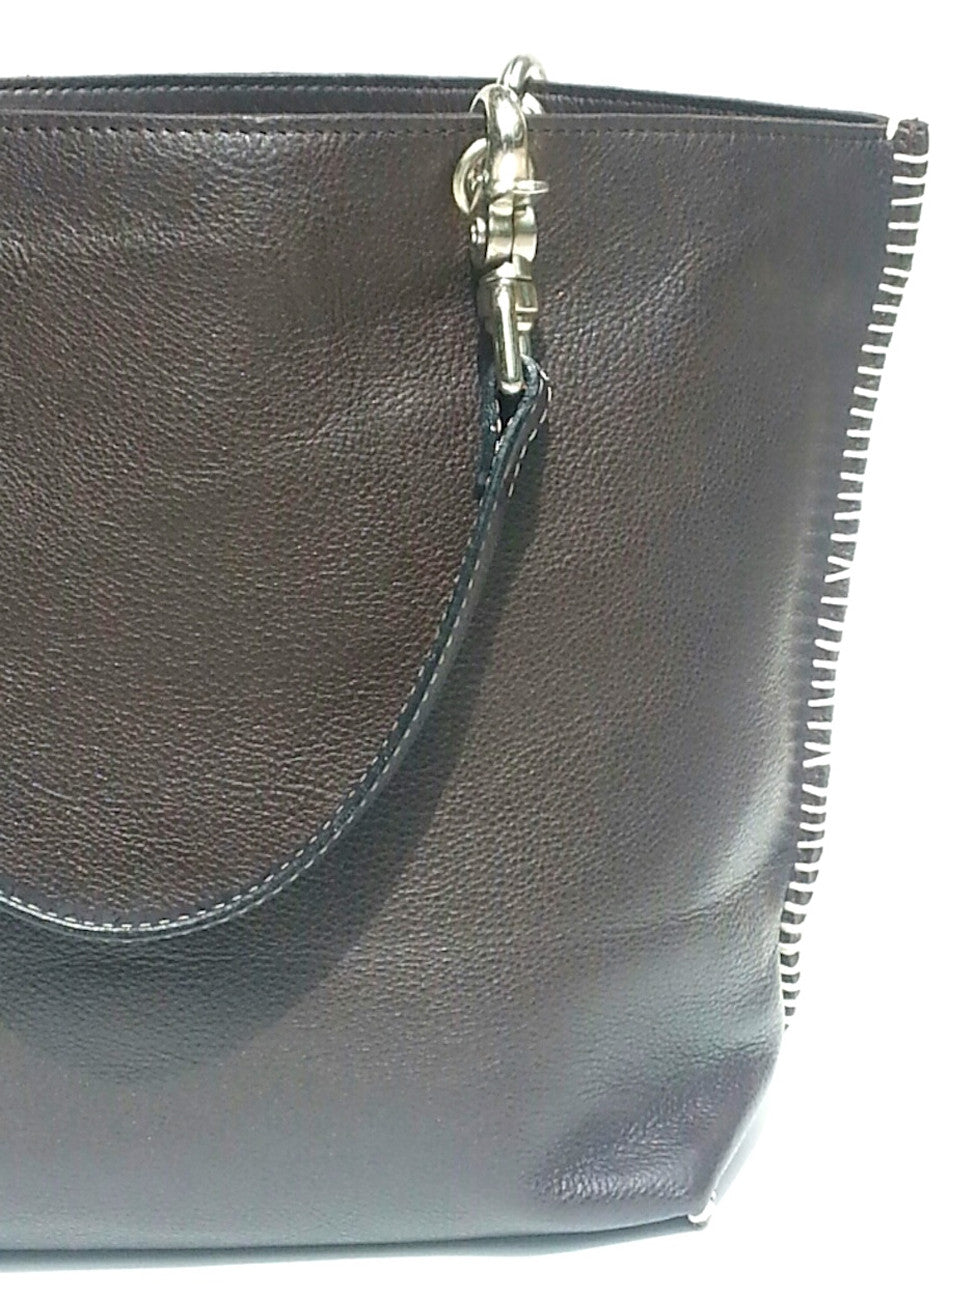 Gamidi Tote Bag Nappa Leather